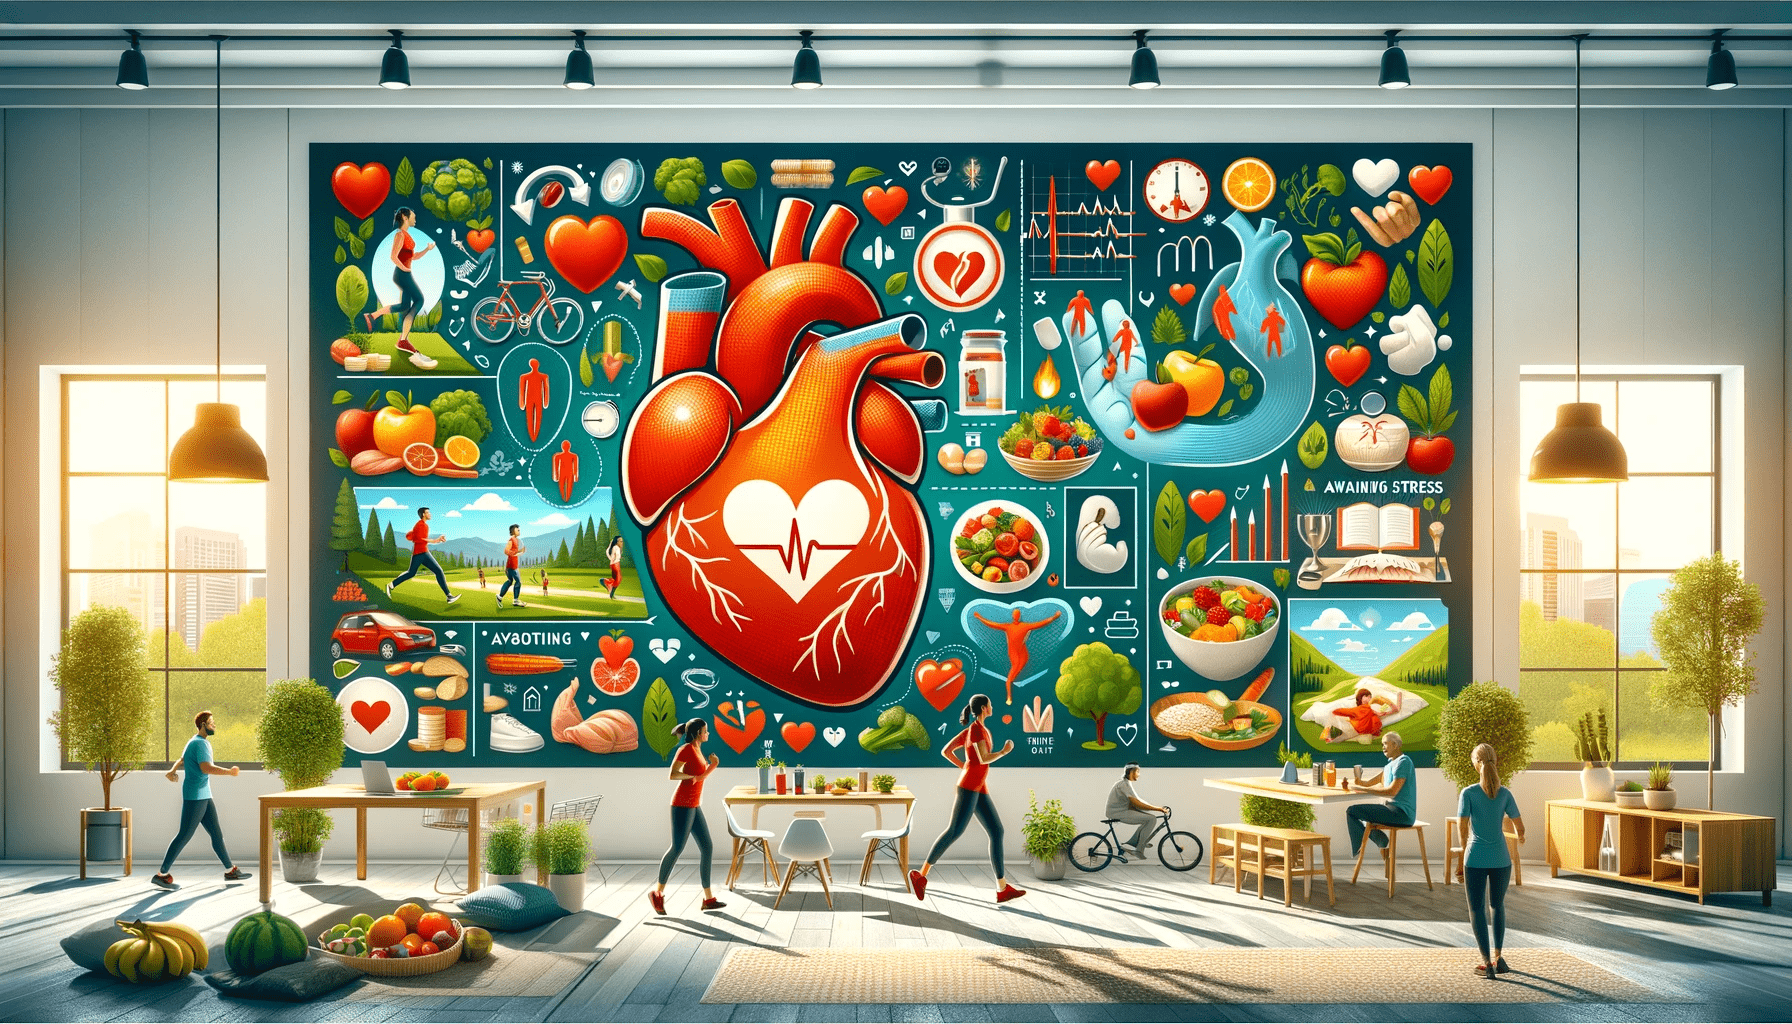 Quels sont les conseils pour maintenir une bonne santé cardiovasculaire ?